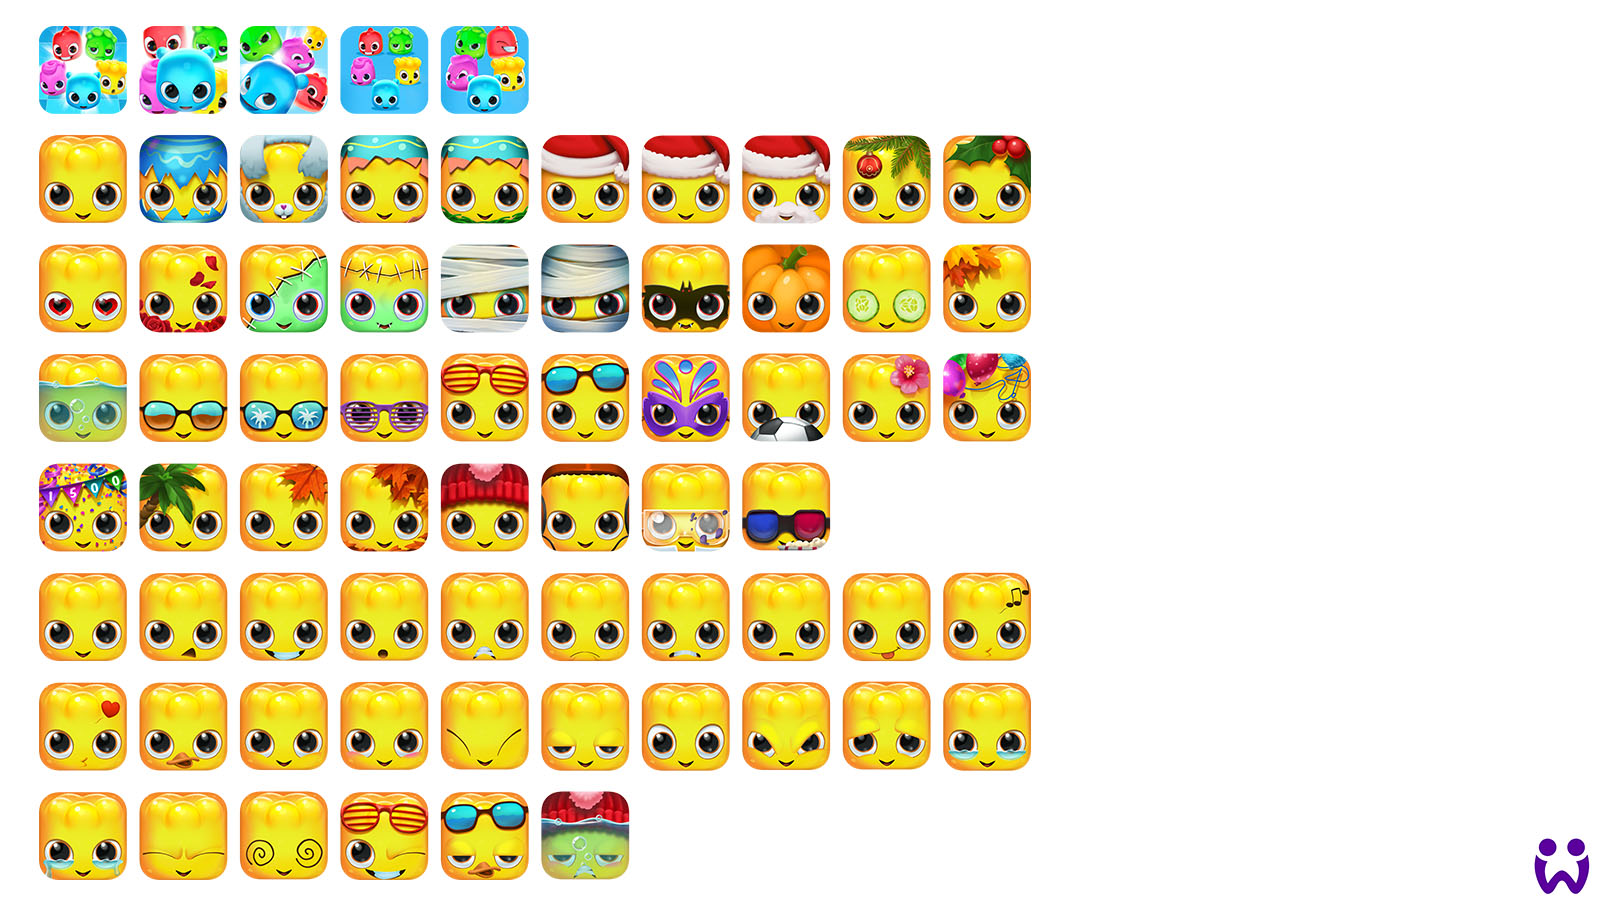 Sammlung von Appstore Icons nach Neugestaltung, und Anpassung alter App Icons. Für Wooga's Mobile Game Jelly Splash.